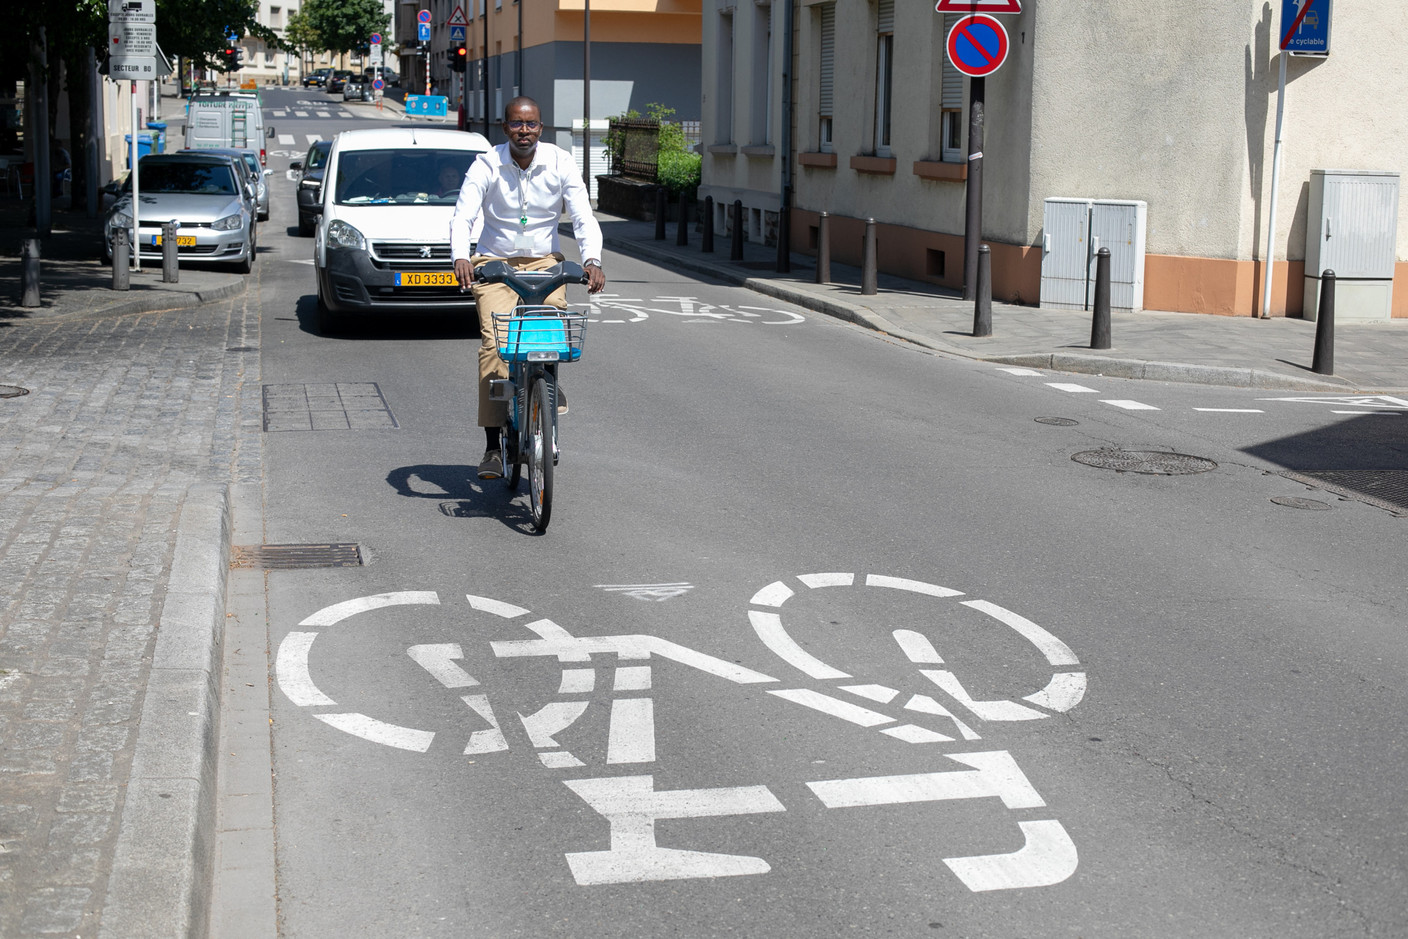 Dans ces «rues cyclables» – ici rue Irmine –, les vélos sont prioritaires et interdiction est faite aux voitures et bus de les doubler. (Photo: Matic Zorman / Maison Moderne)